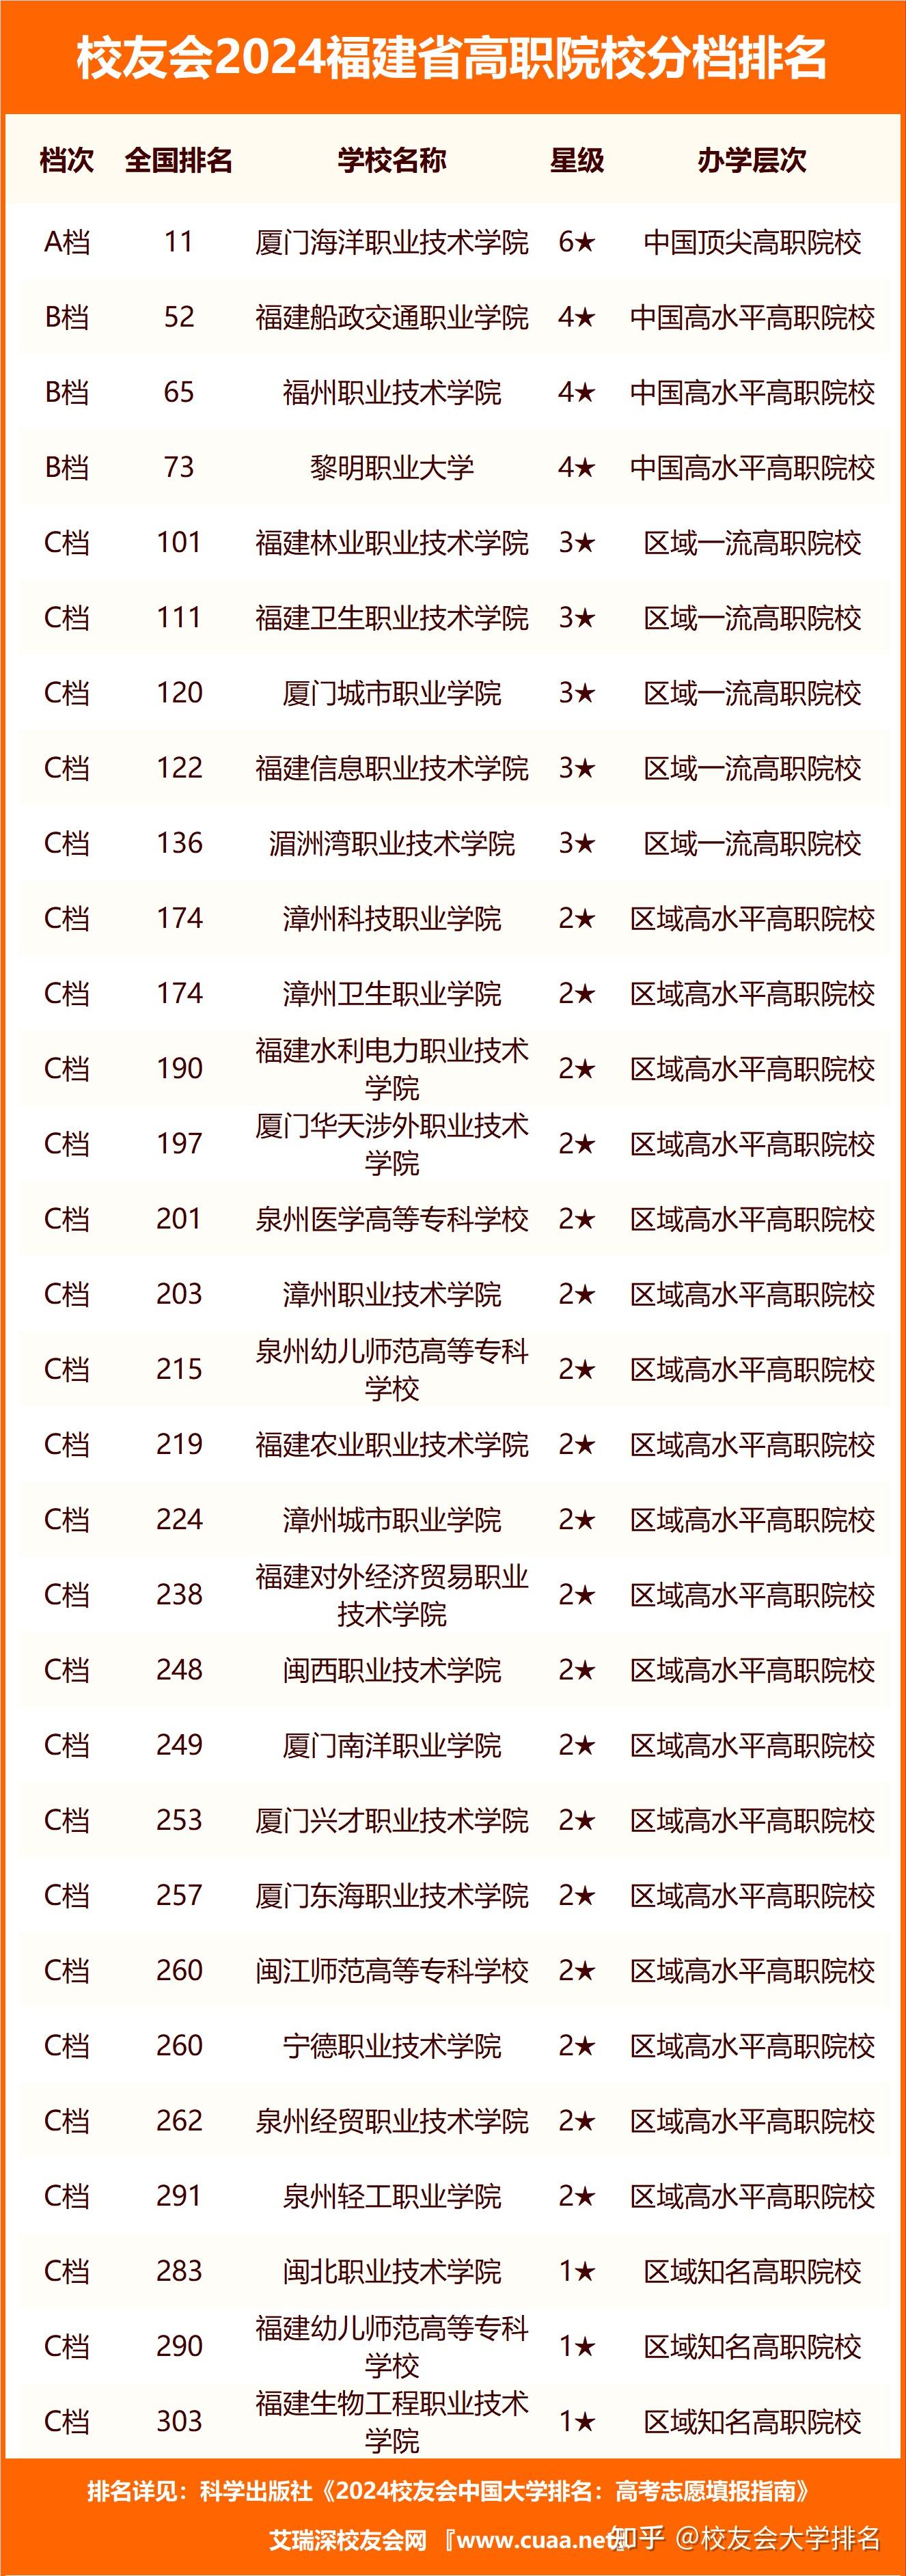 校友会2024福建省民办大学分档排名,福州外语外贸学院雄居最高档